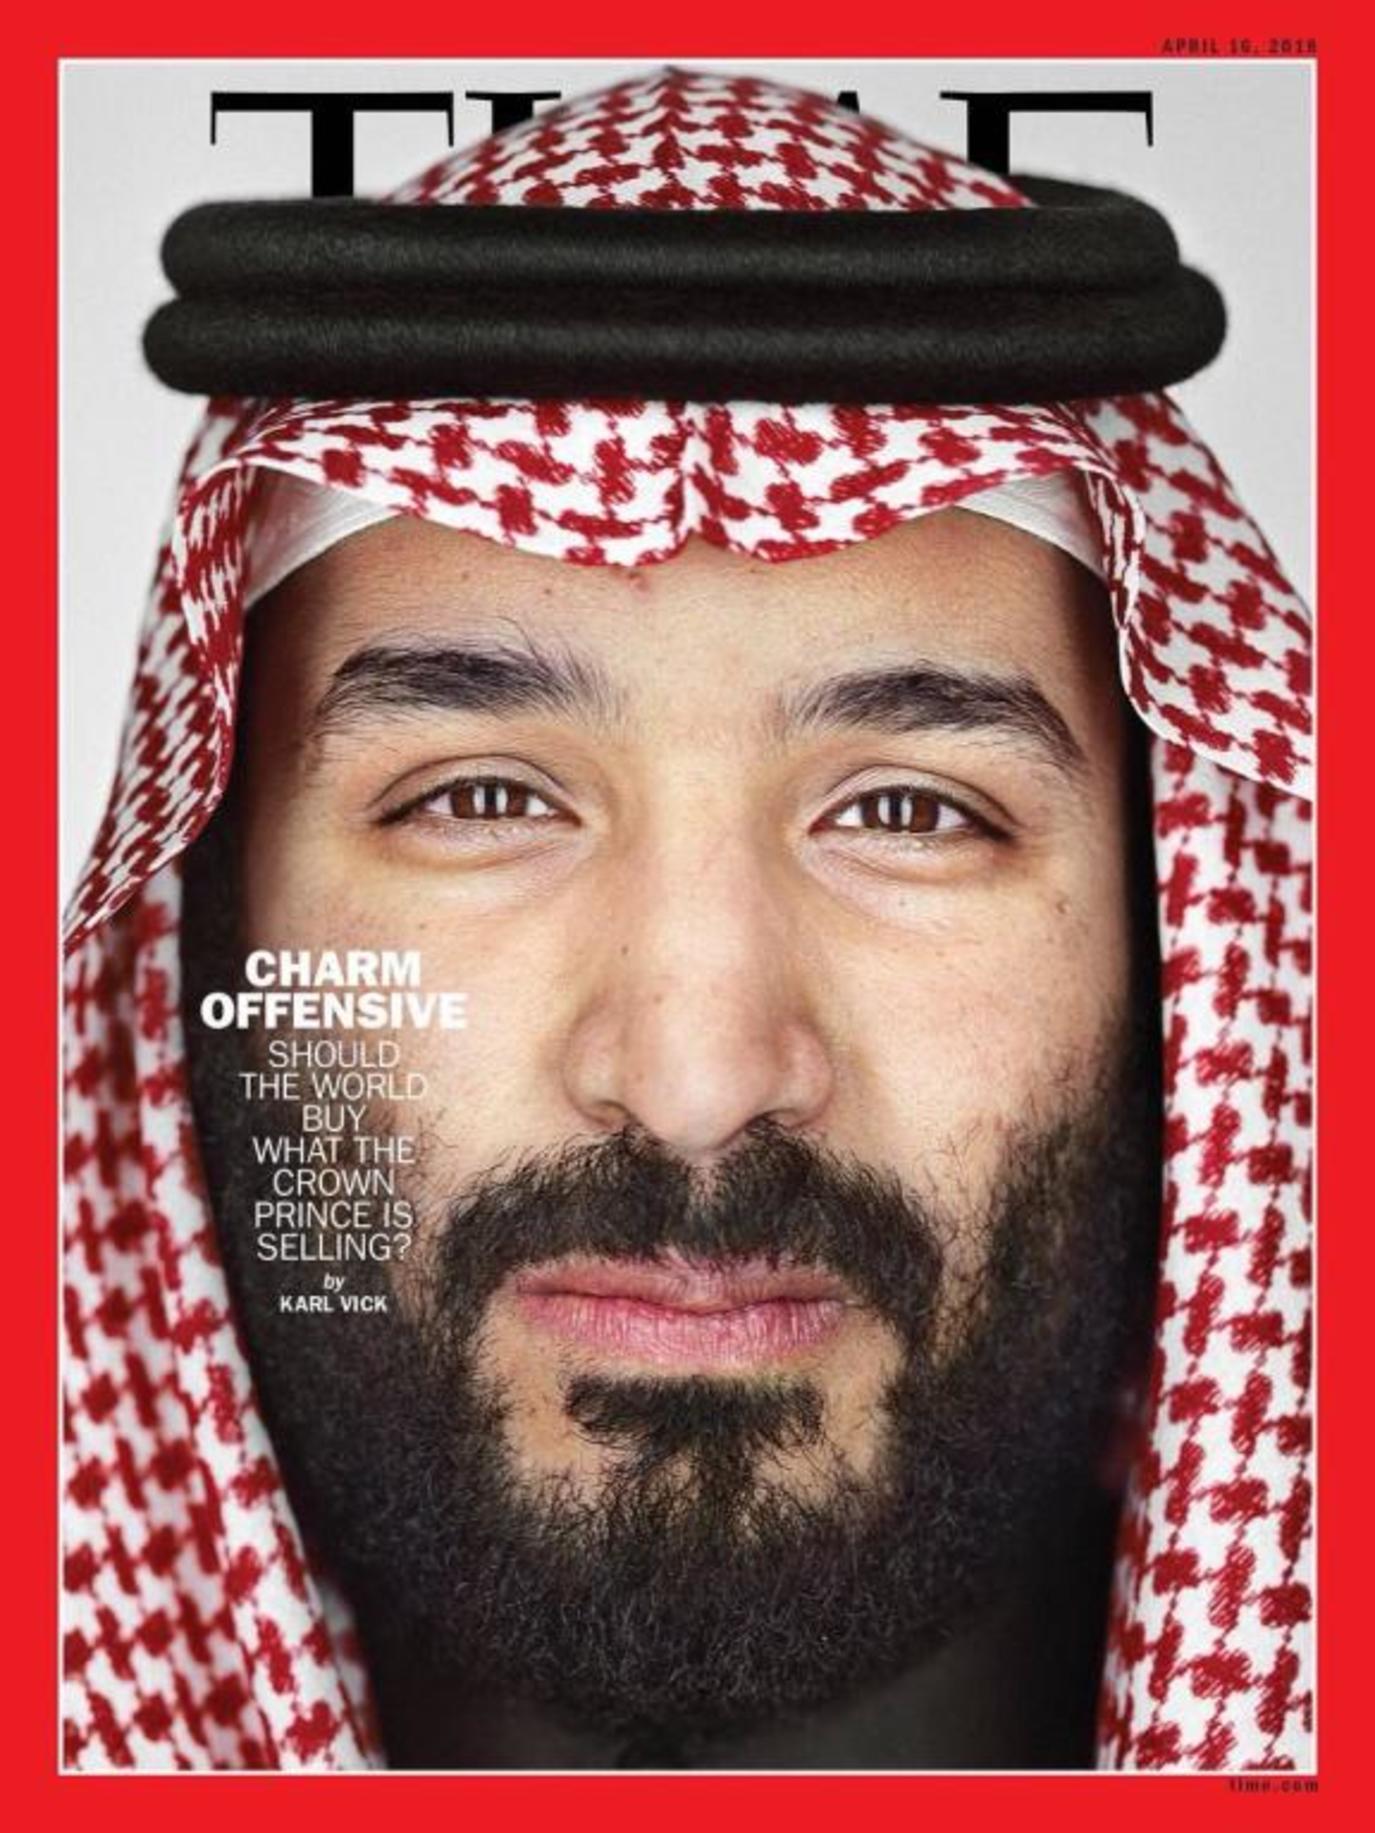 الأمير محمد بن سلمان في عيون الغرب  مجلة سيدتي